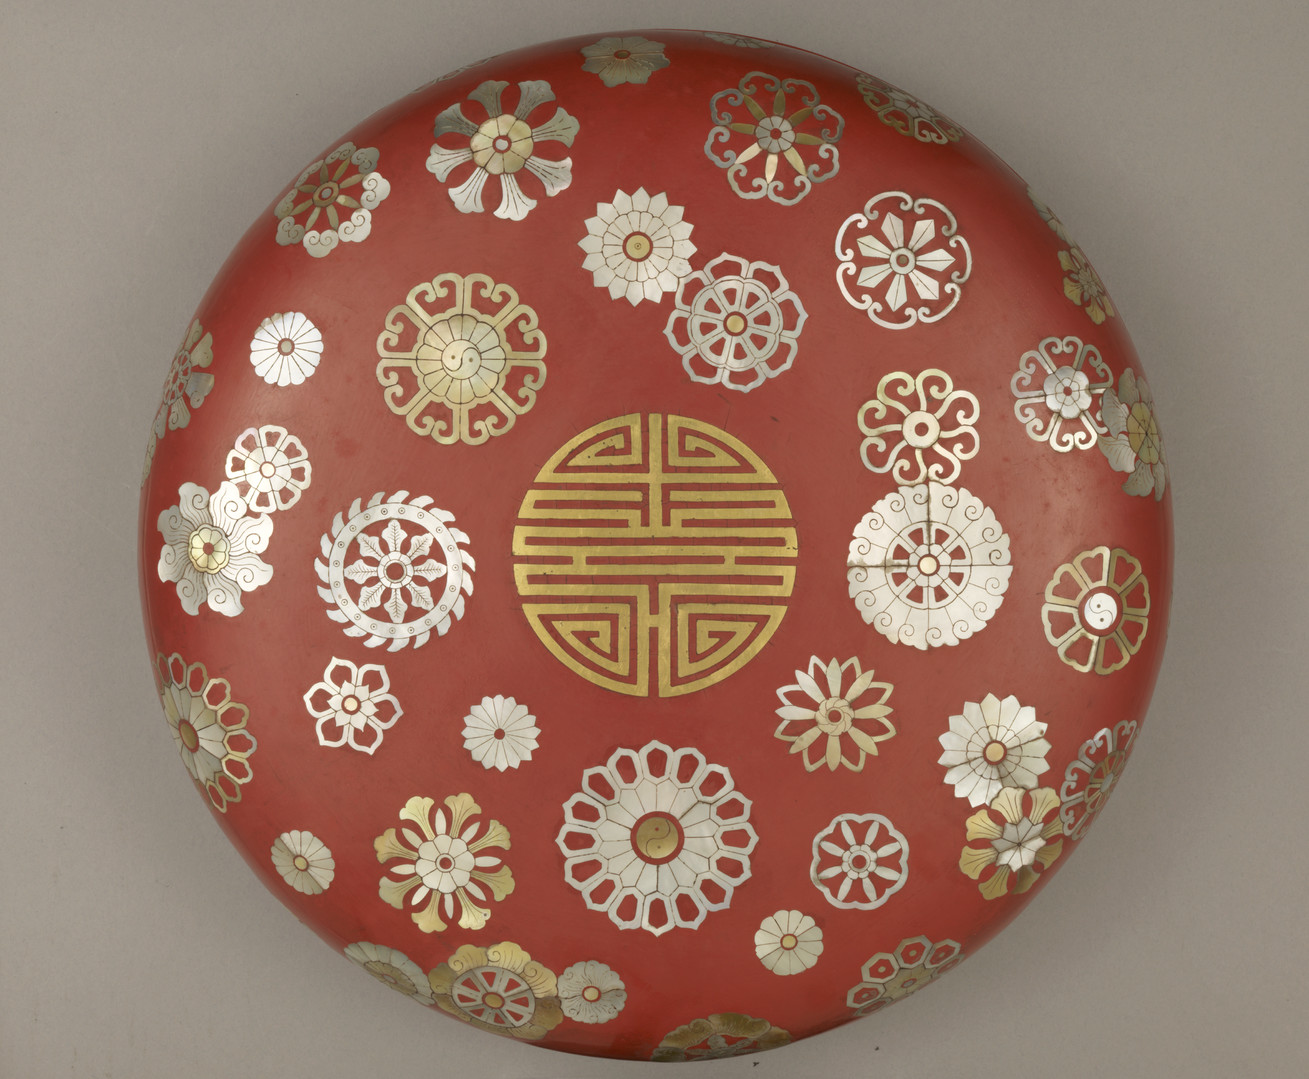 剔红双层牡丹纹圆盘 - 故宫博物院